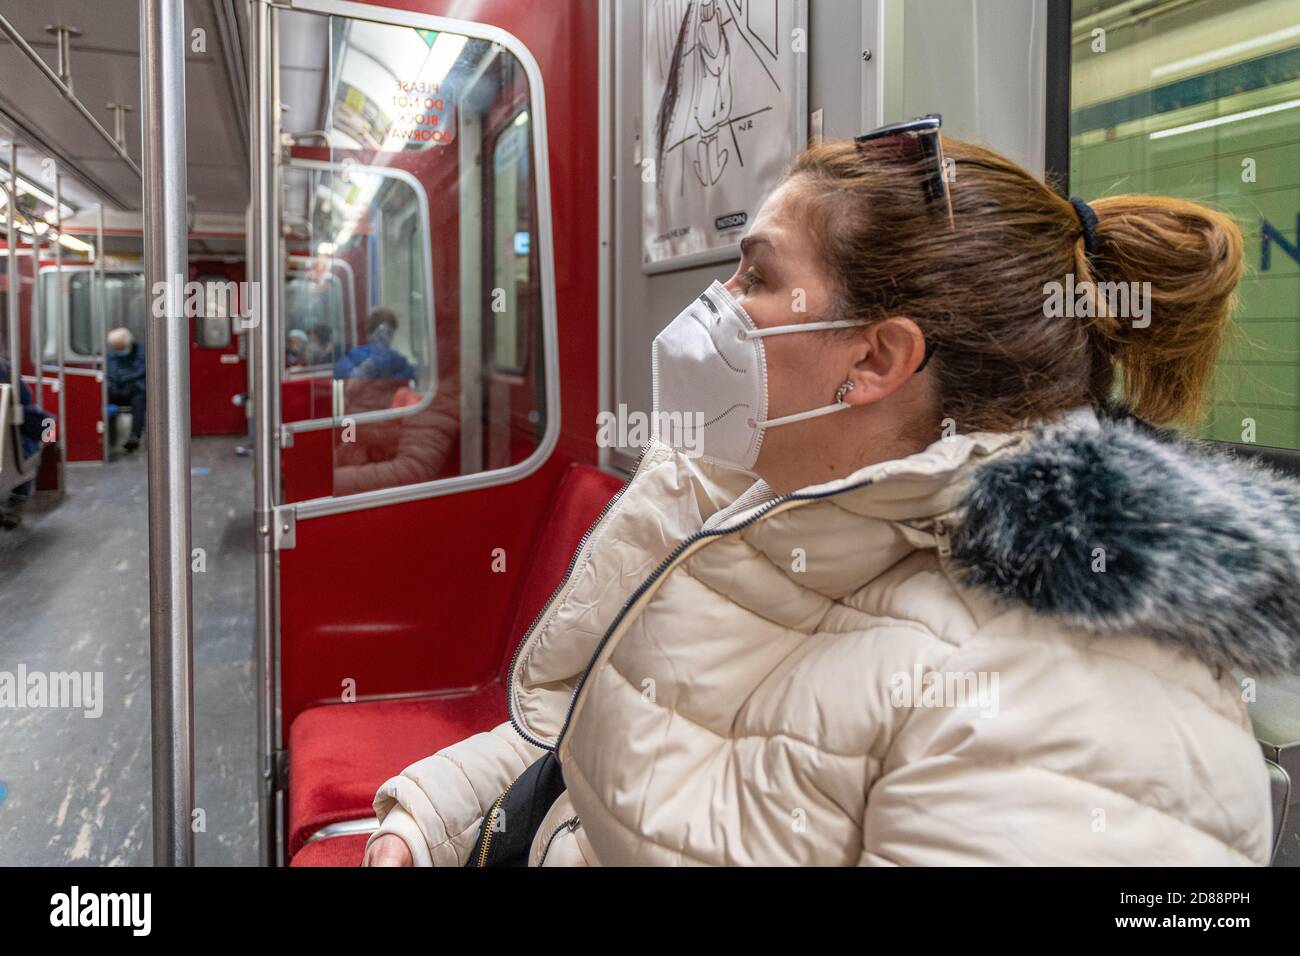 Personnes portant des masques de protection tout en montant la TTC. Les masques sont obligatoires à l'intérieur du réseau de transport public Banque D'Images